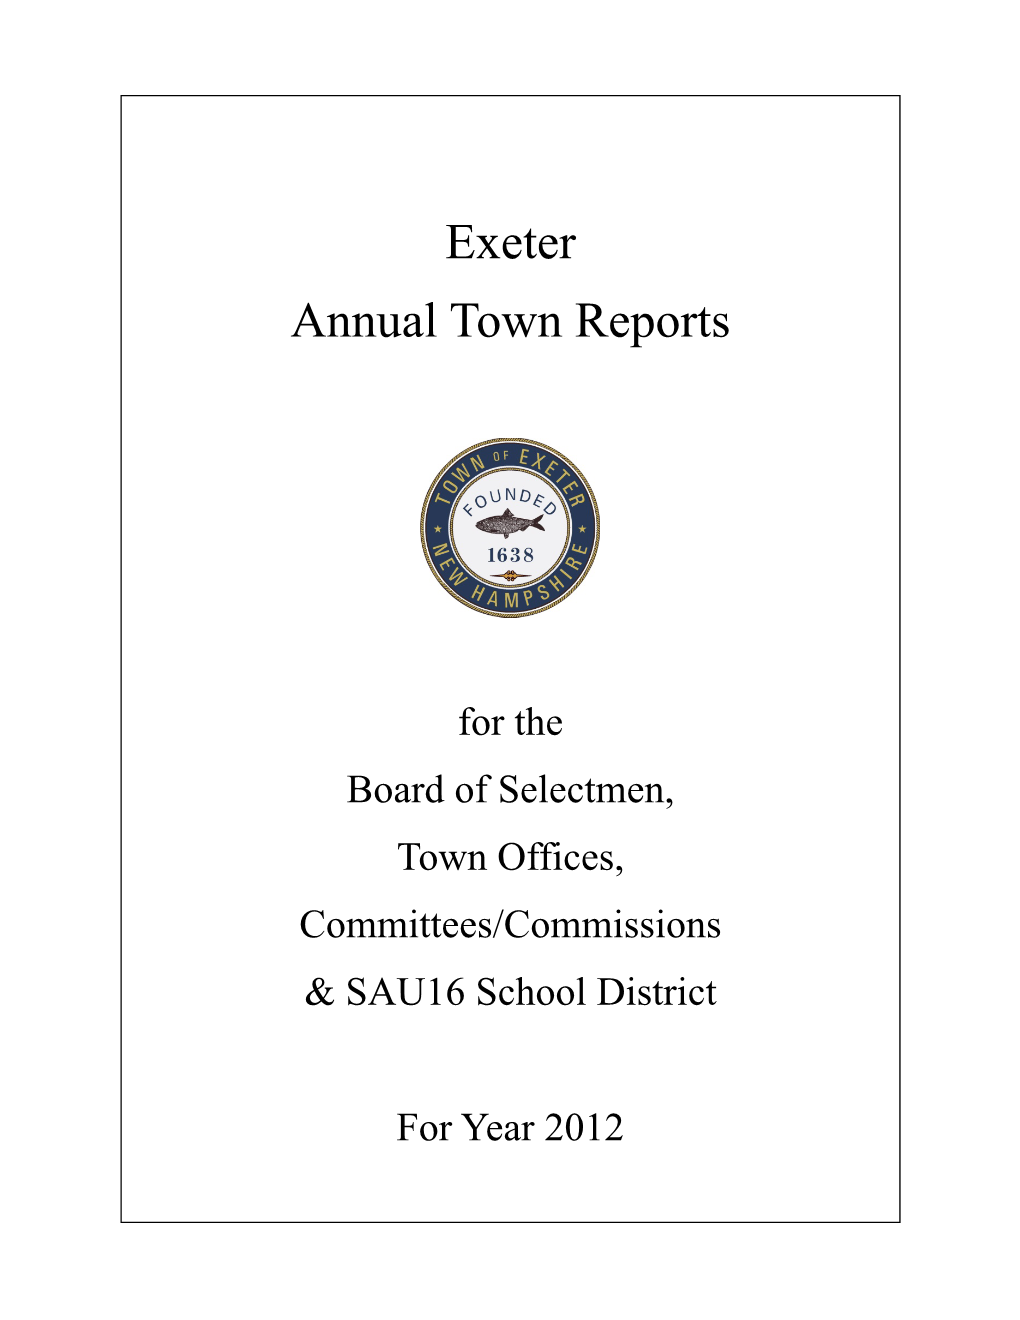 2012 Town Report Dedication